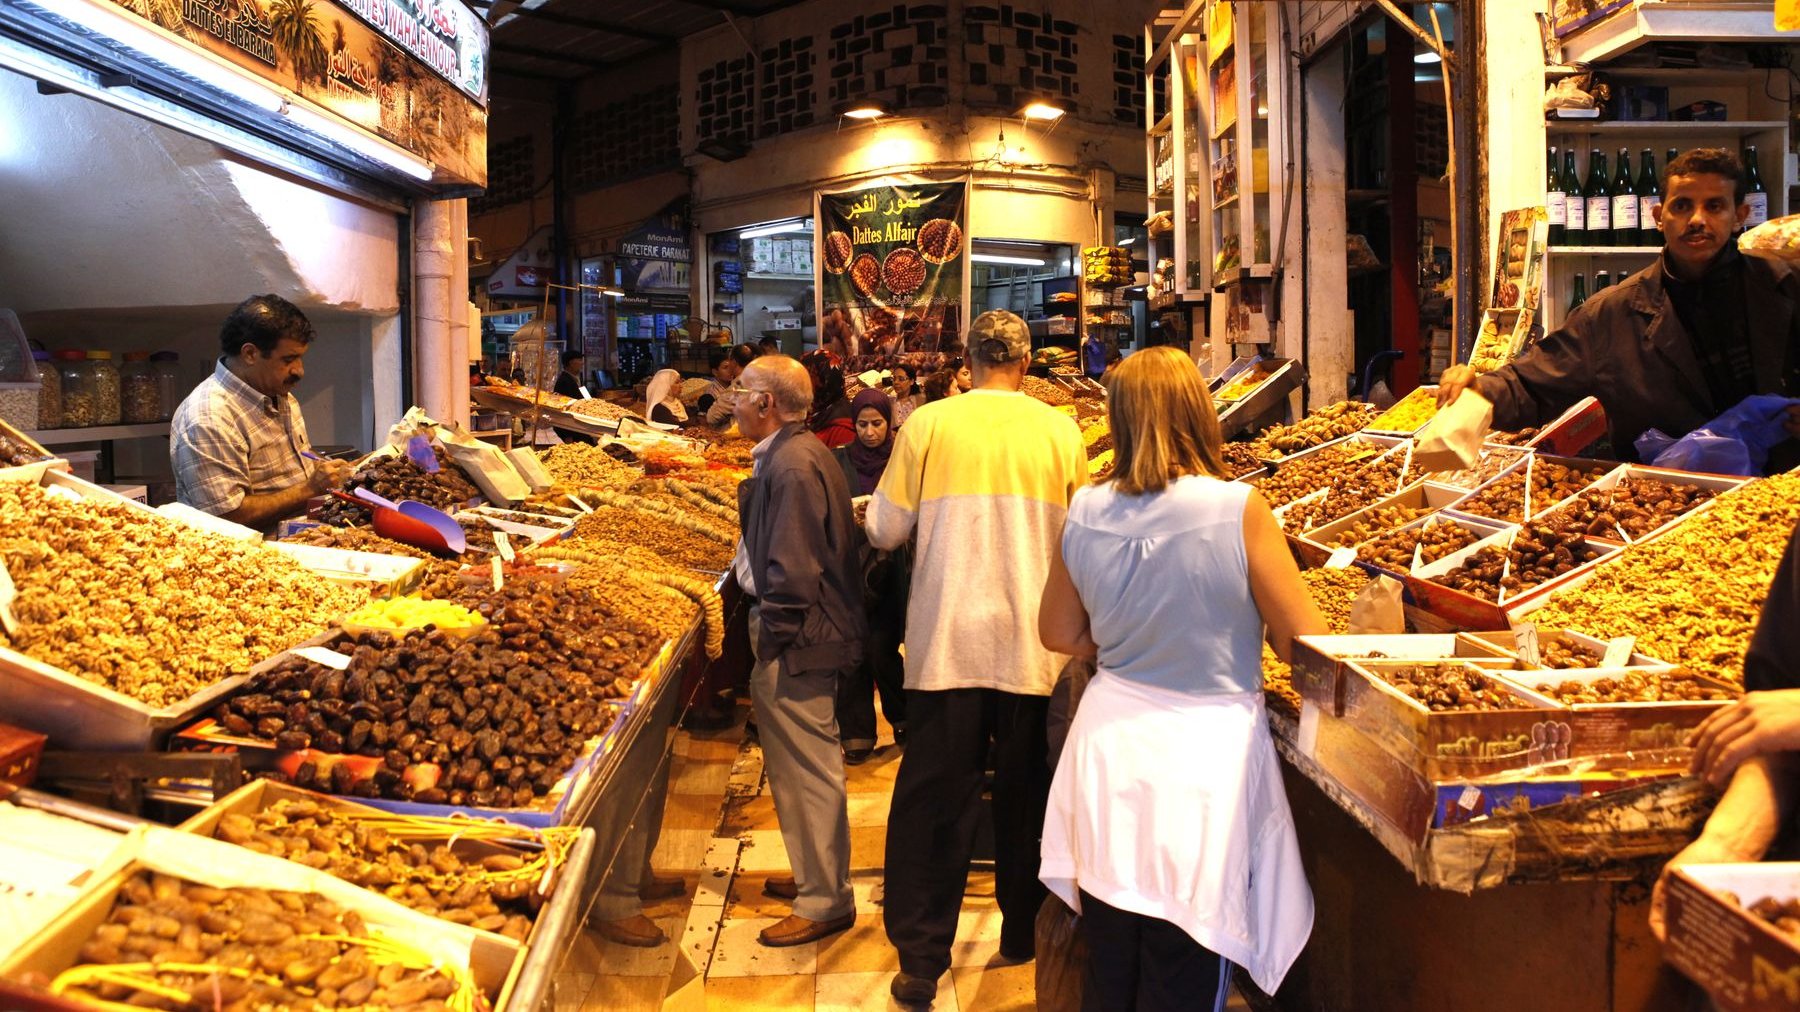 إقبال مكثف للمغاربة على شراء "الفاكية" للإحتفال بالسنة الهجرية
